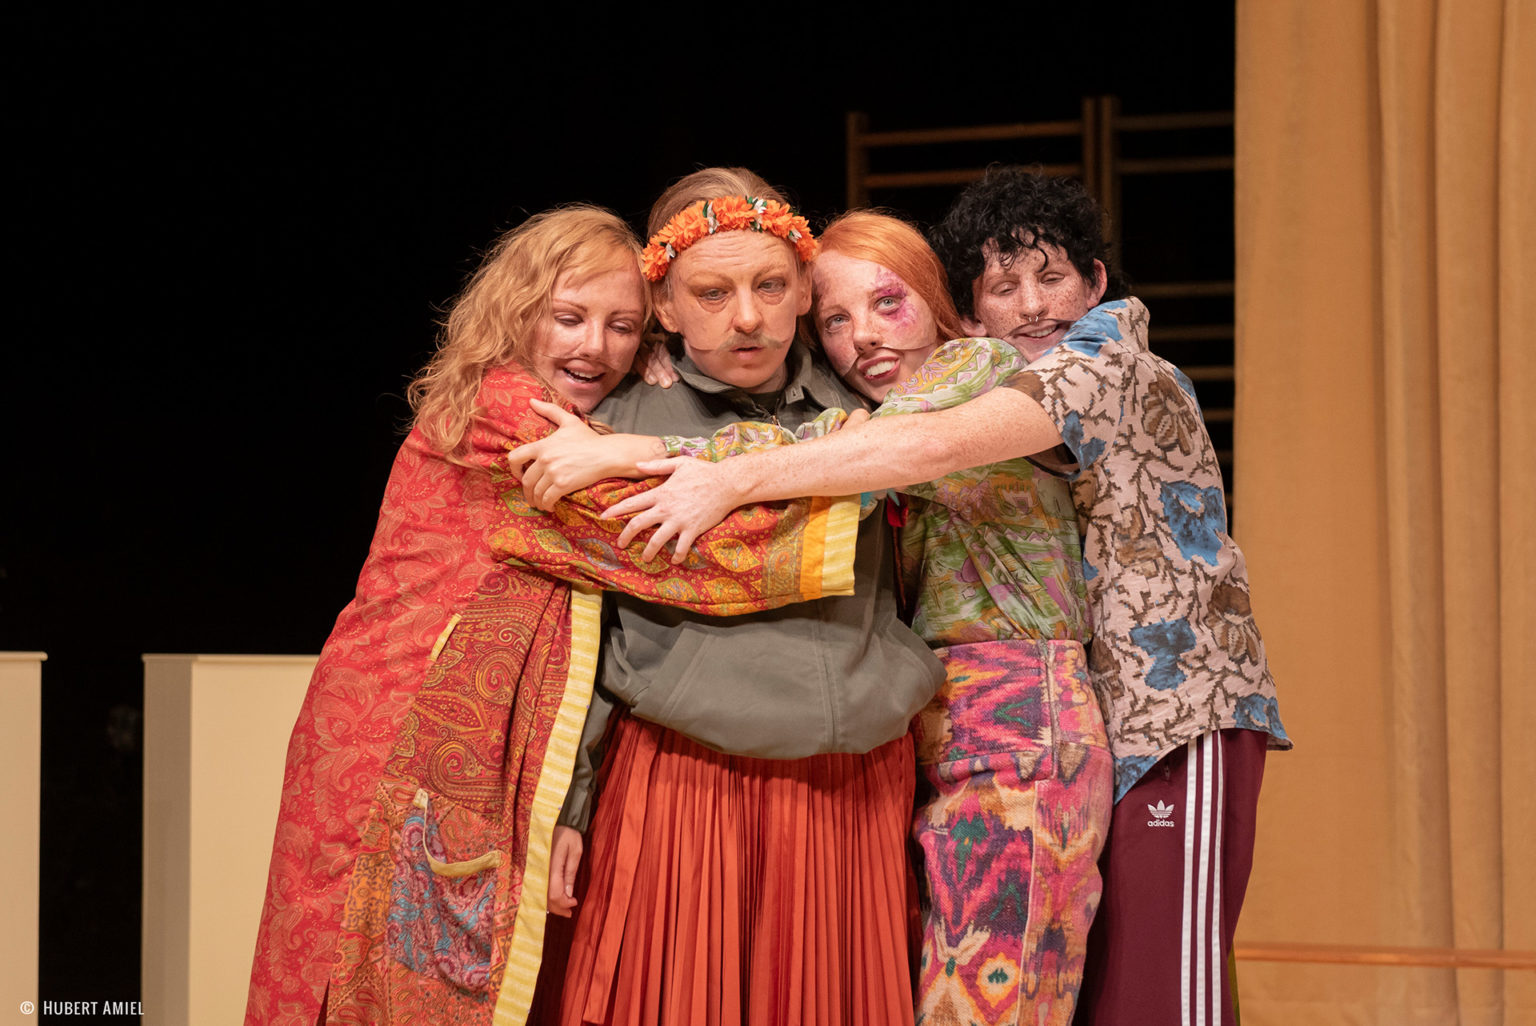 Photo du spectacle L'amour c'est pour du beurre où l'on voit 4 des comédiennes qui se font un câlin. Elles portent des masques réalistes et des vêtements colorés.